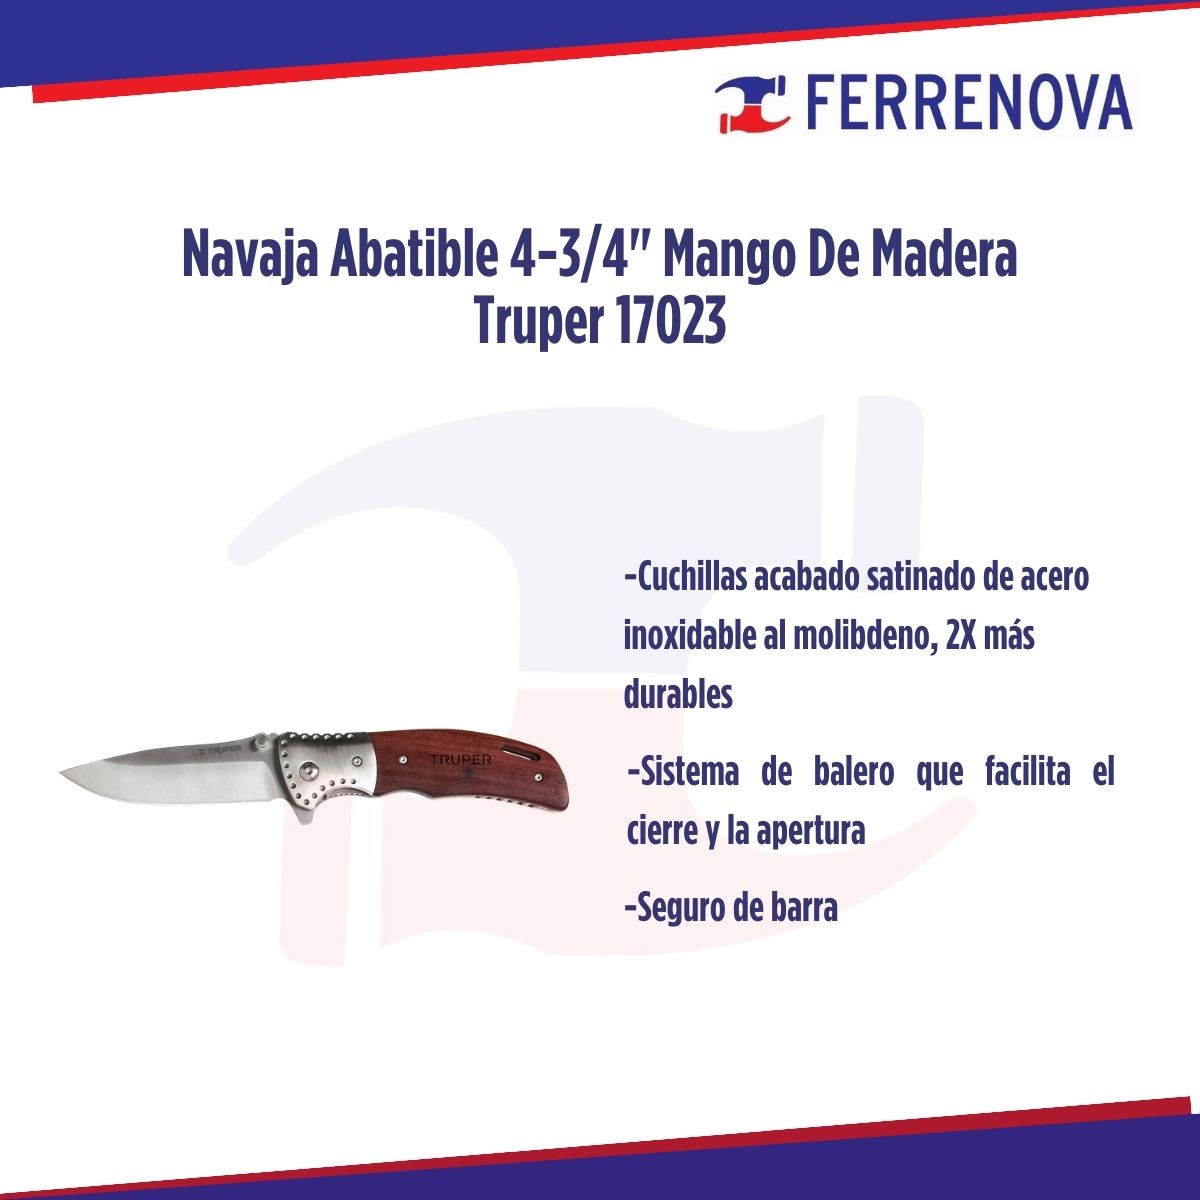 Navaja Abatible 4 3/4" Mango De Madera Truper 17023